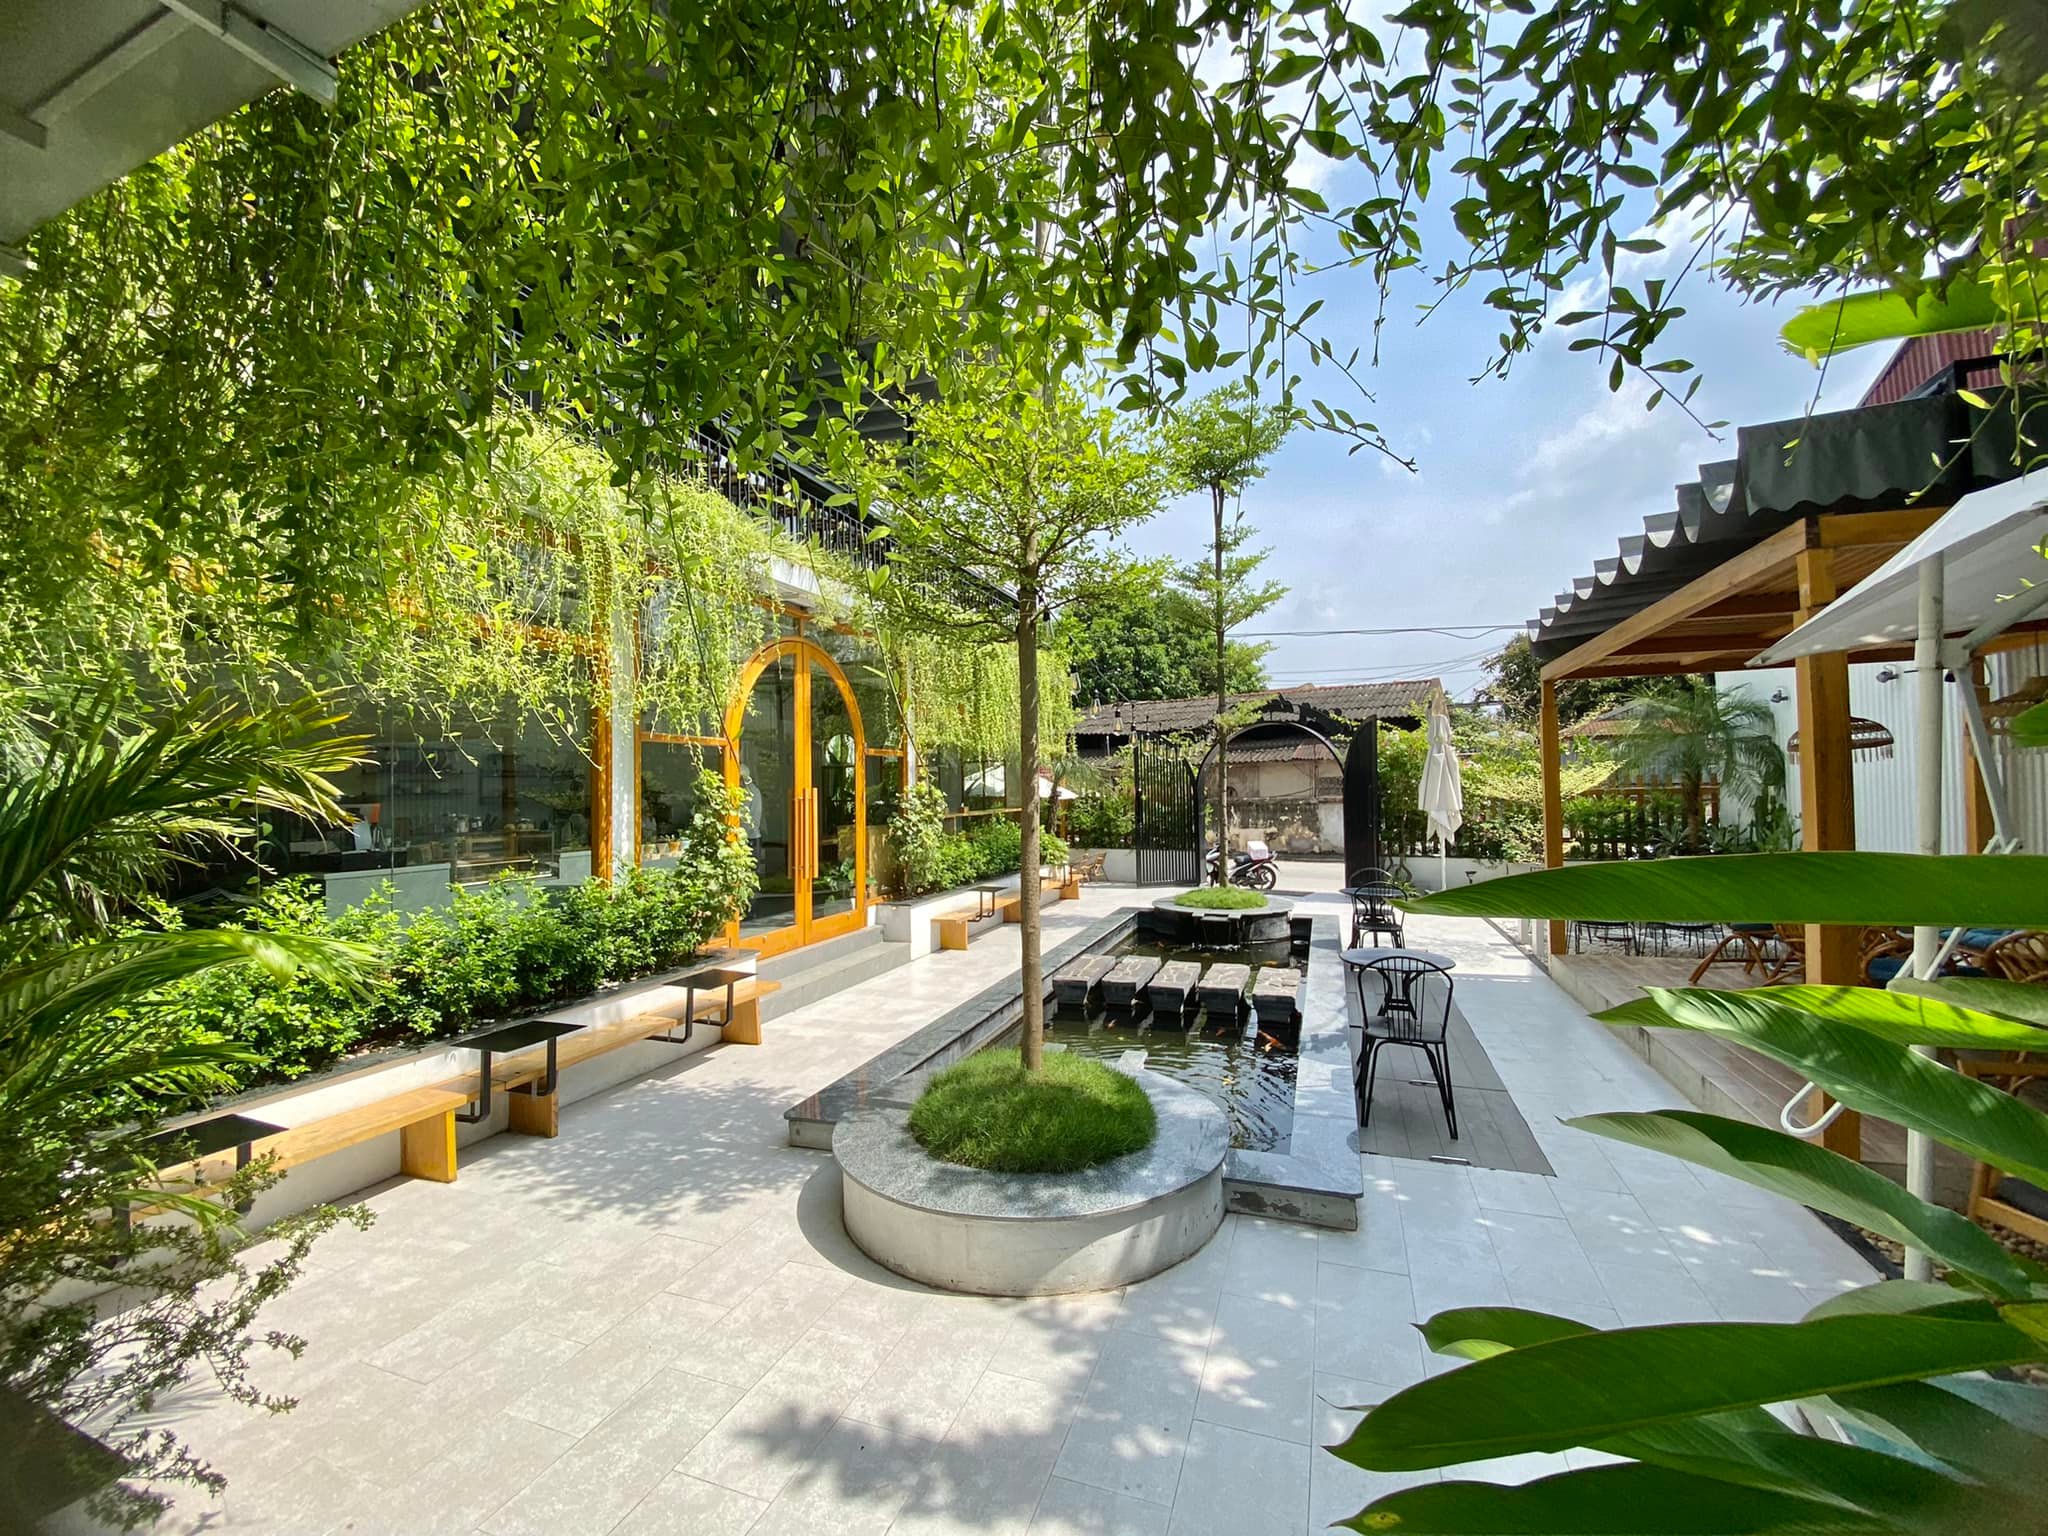 thi công thiết kế quán cafe sân vườn 50m2 chỉ 120 triệu ở Hà Nội